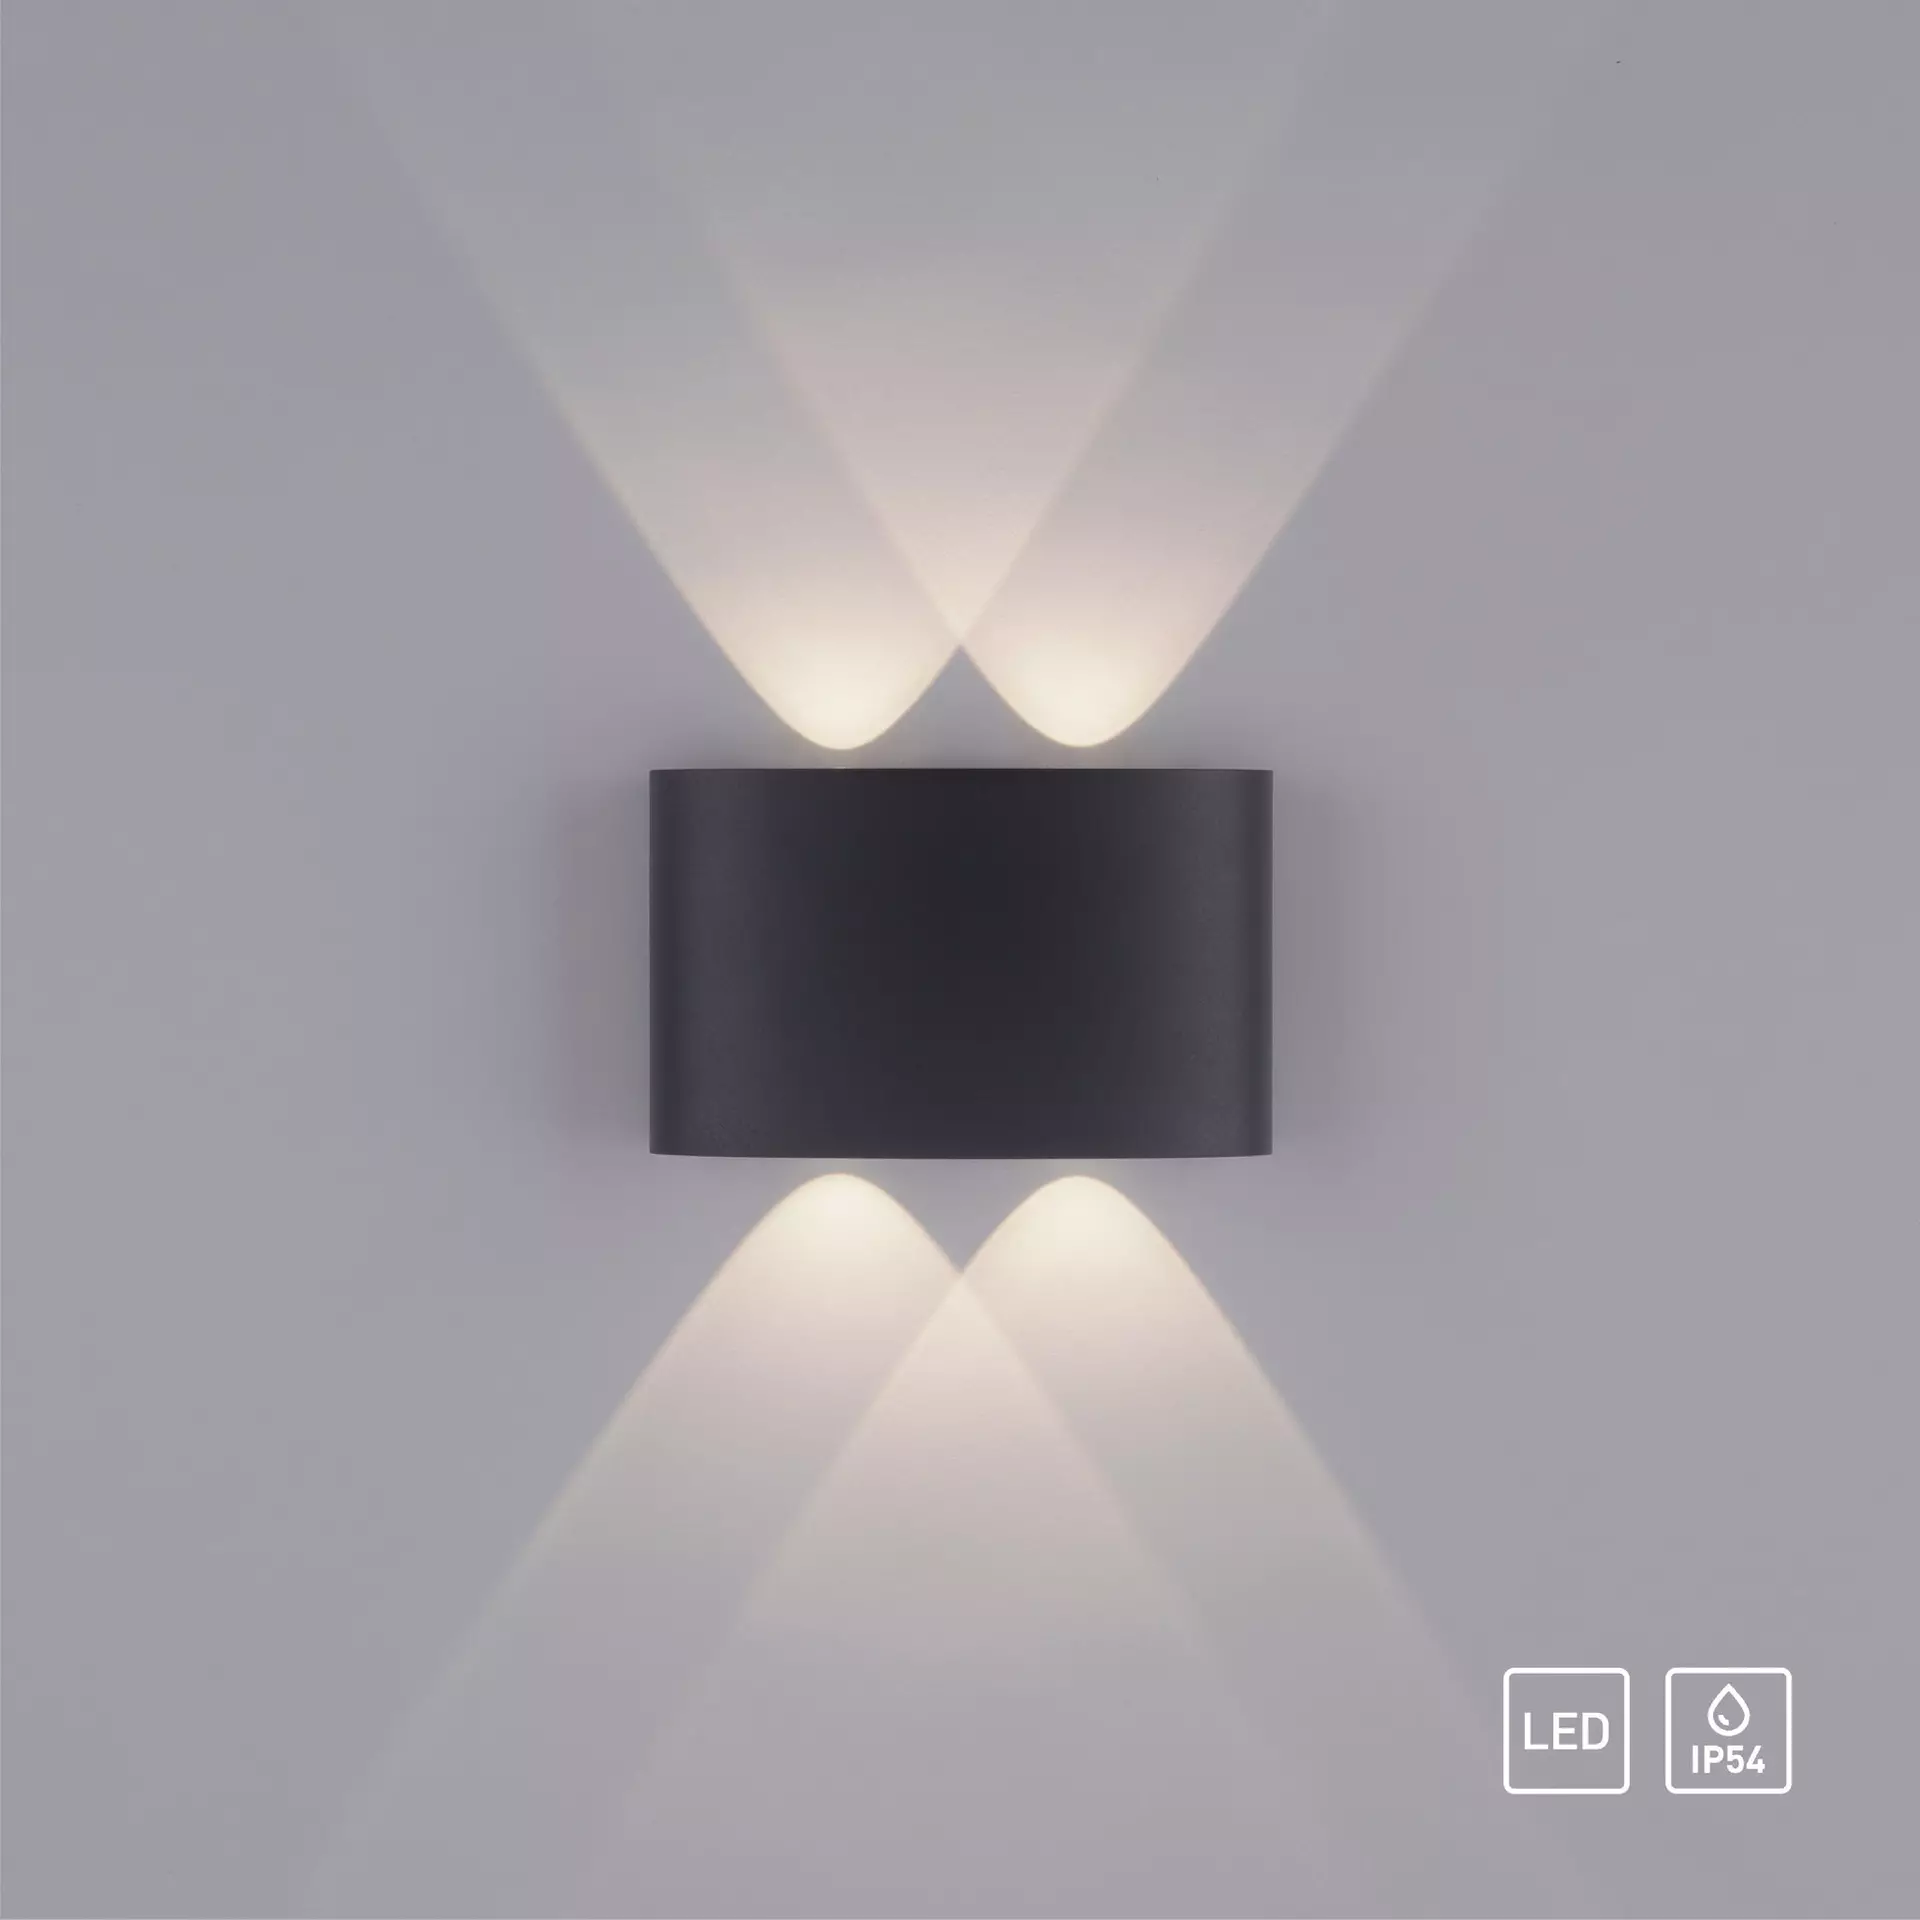 Wand-Aussenleuchte LED schwarz | Möbel Inhofer | Wandleuchten